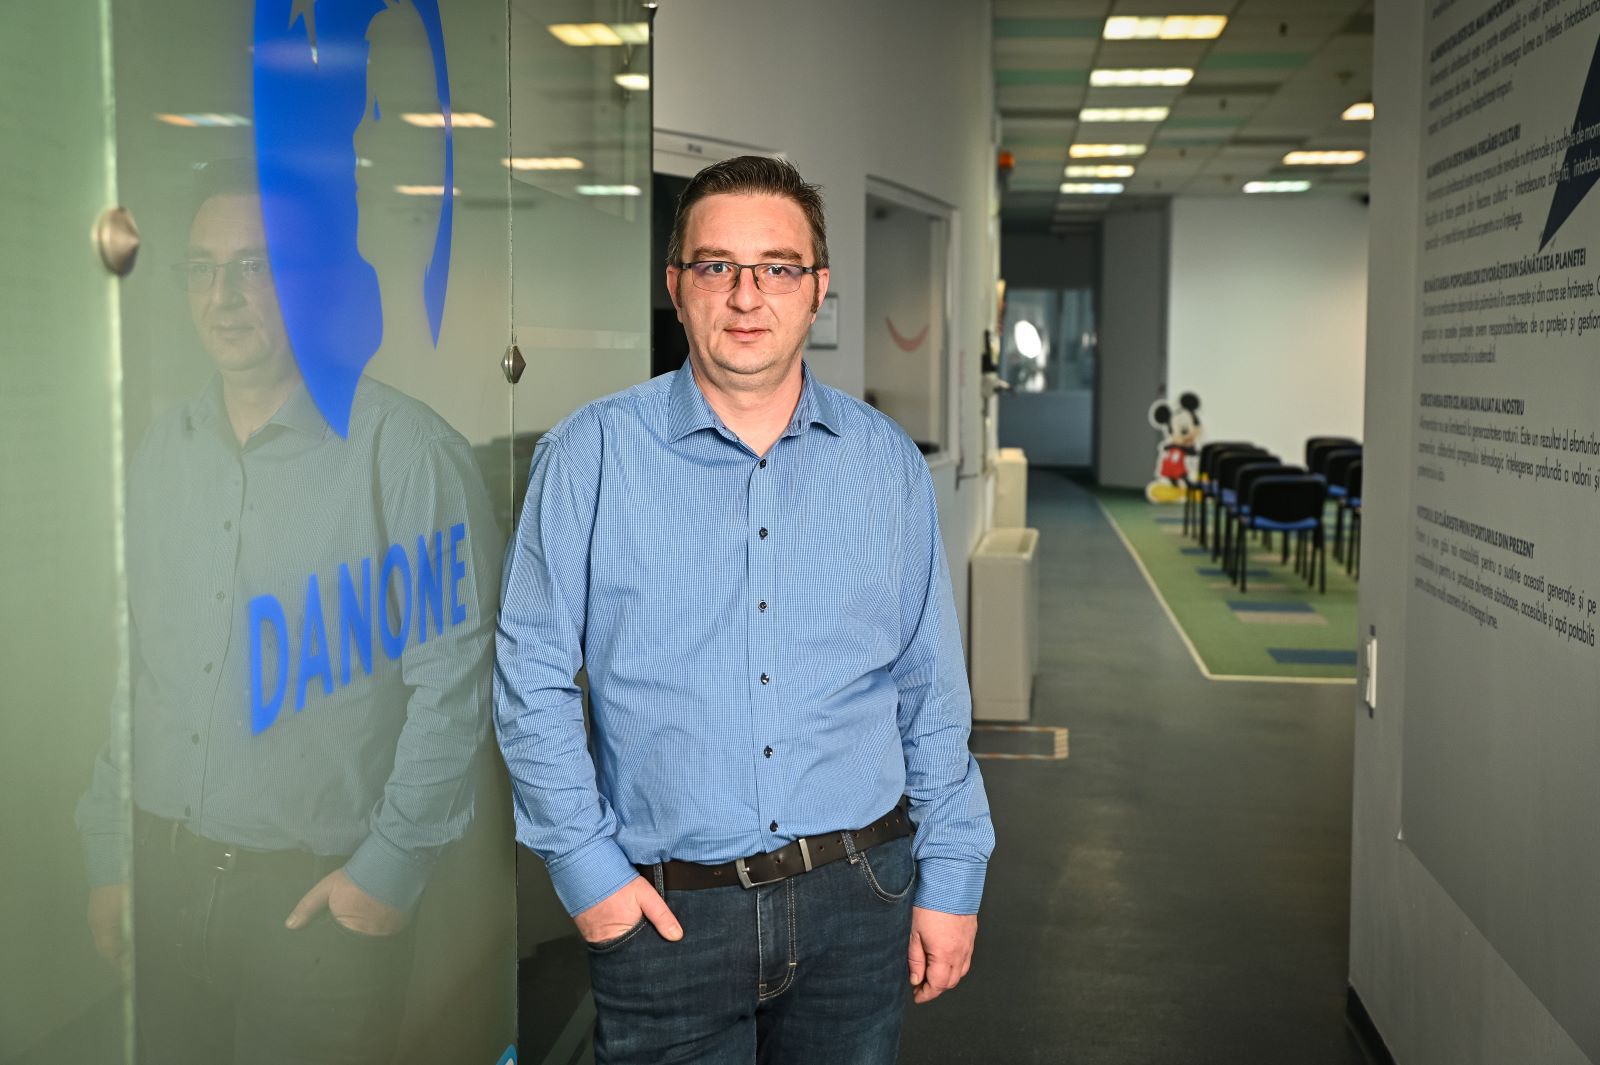 Bogdan Joiţa este noul director al fabricii Danone din Bucureşti, după 18 ani de experienţă în companie. Schimbarea a venit în urma numirii lui Cătălin Manoli în funcţia de director al fabricii Danone din Aldaia, în cadrul operaţiunilor Danone din Spania